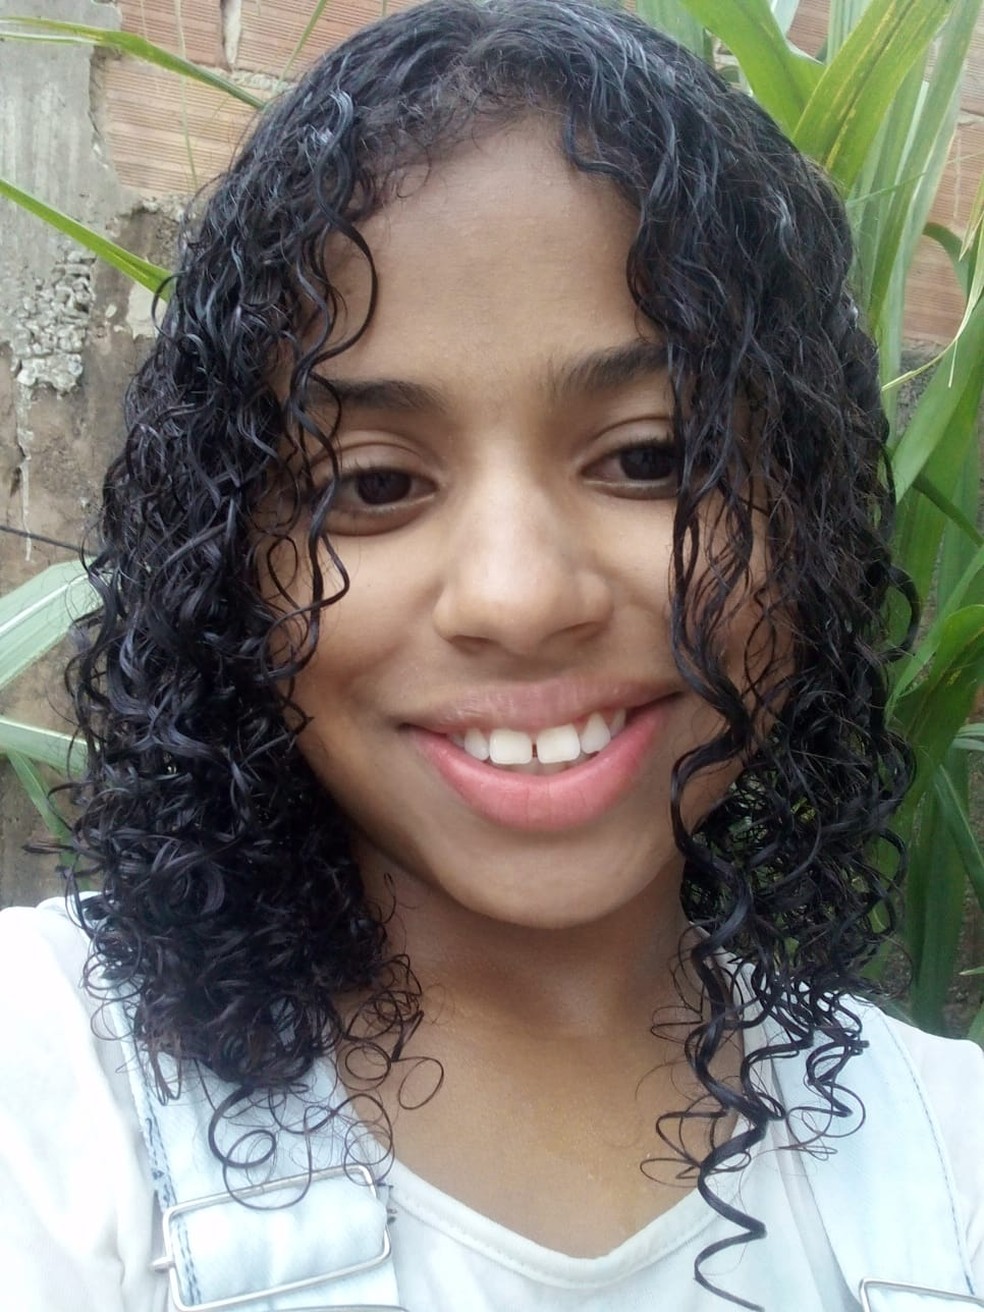 Ana Luíza Silva Gomes foi encontrada morta em calçada no bairro Bela Vitória, na Região Nordeste de Belo Horizonte — Foto: Arquivo pessoal